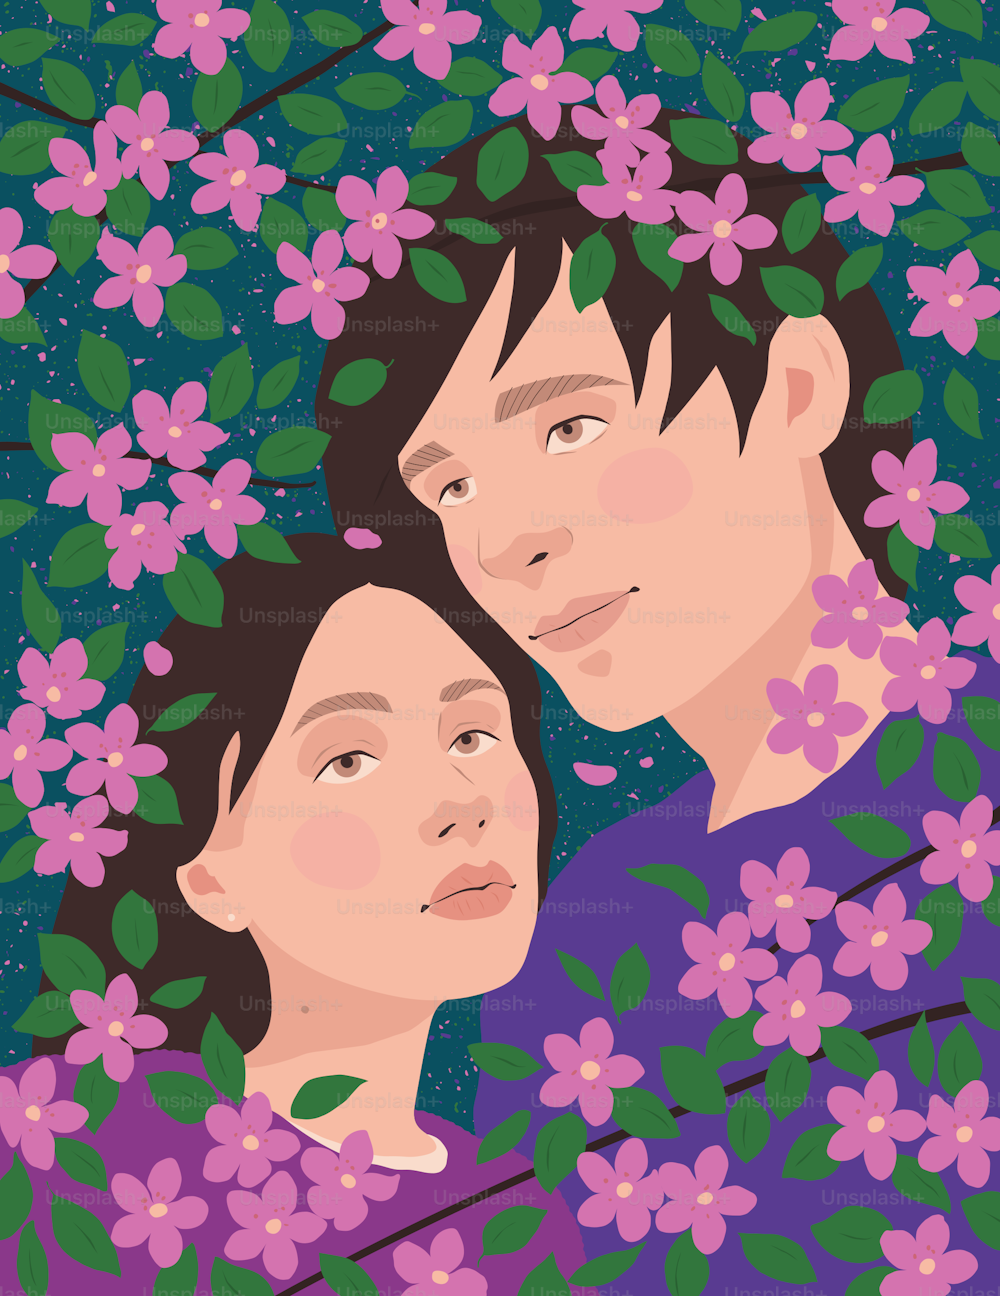 Un cuadro de dos personas rodeadas de flores